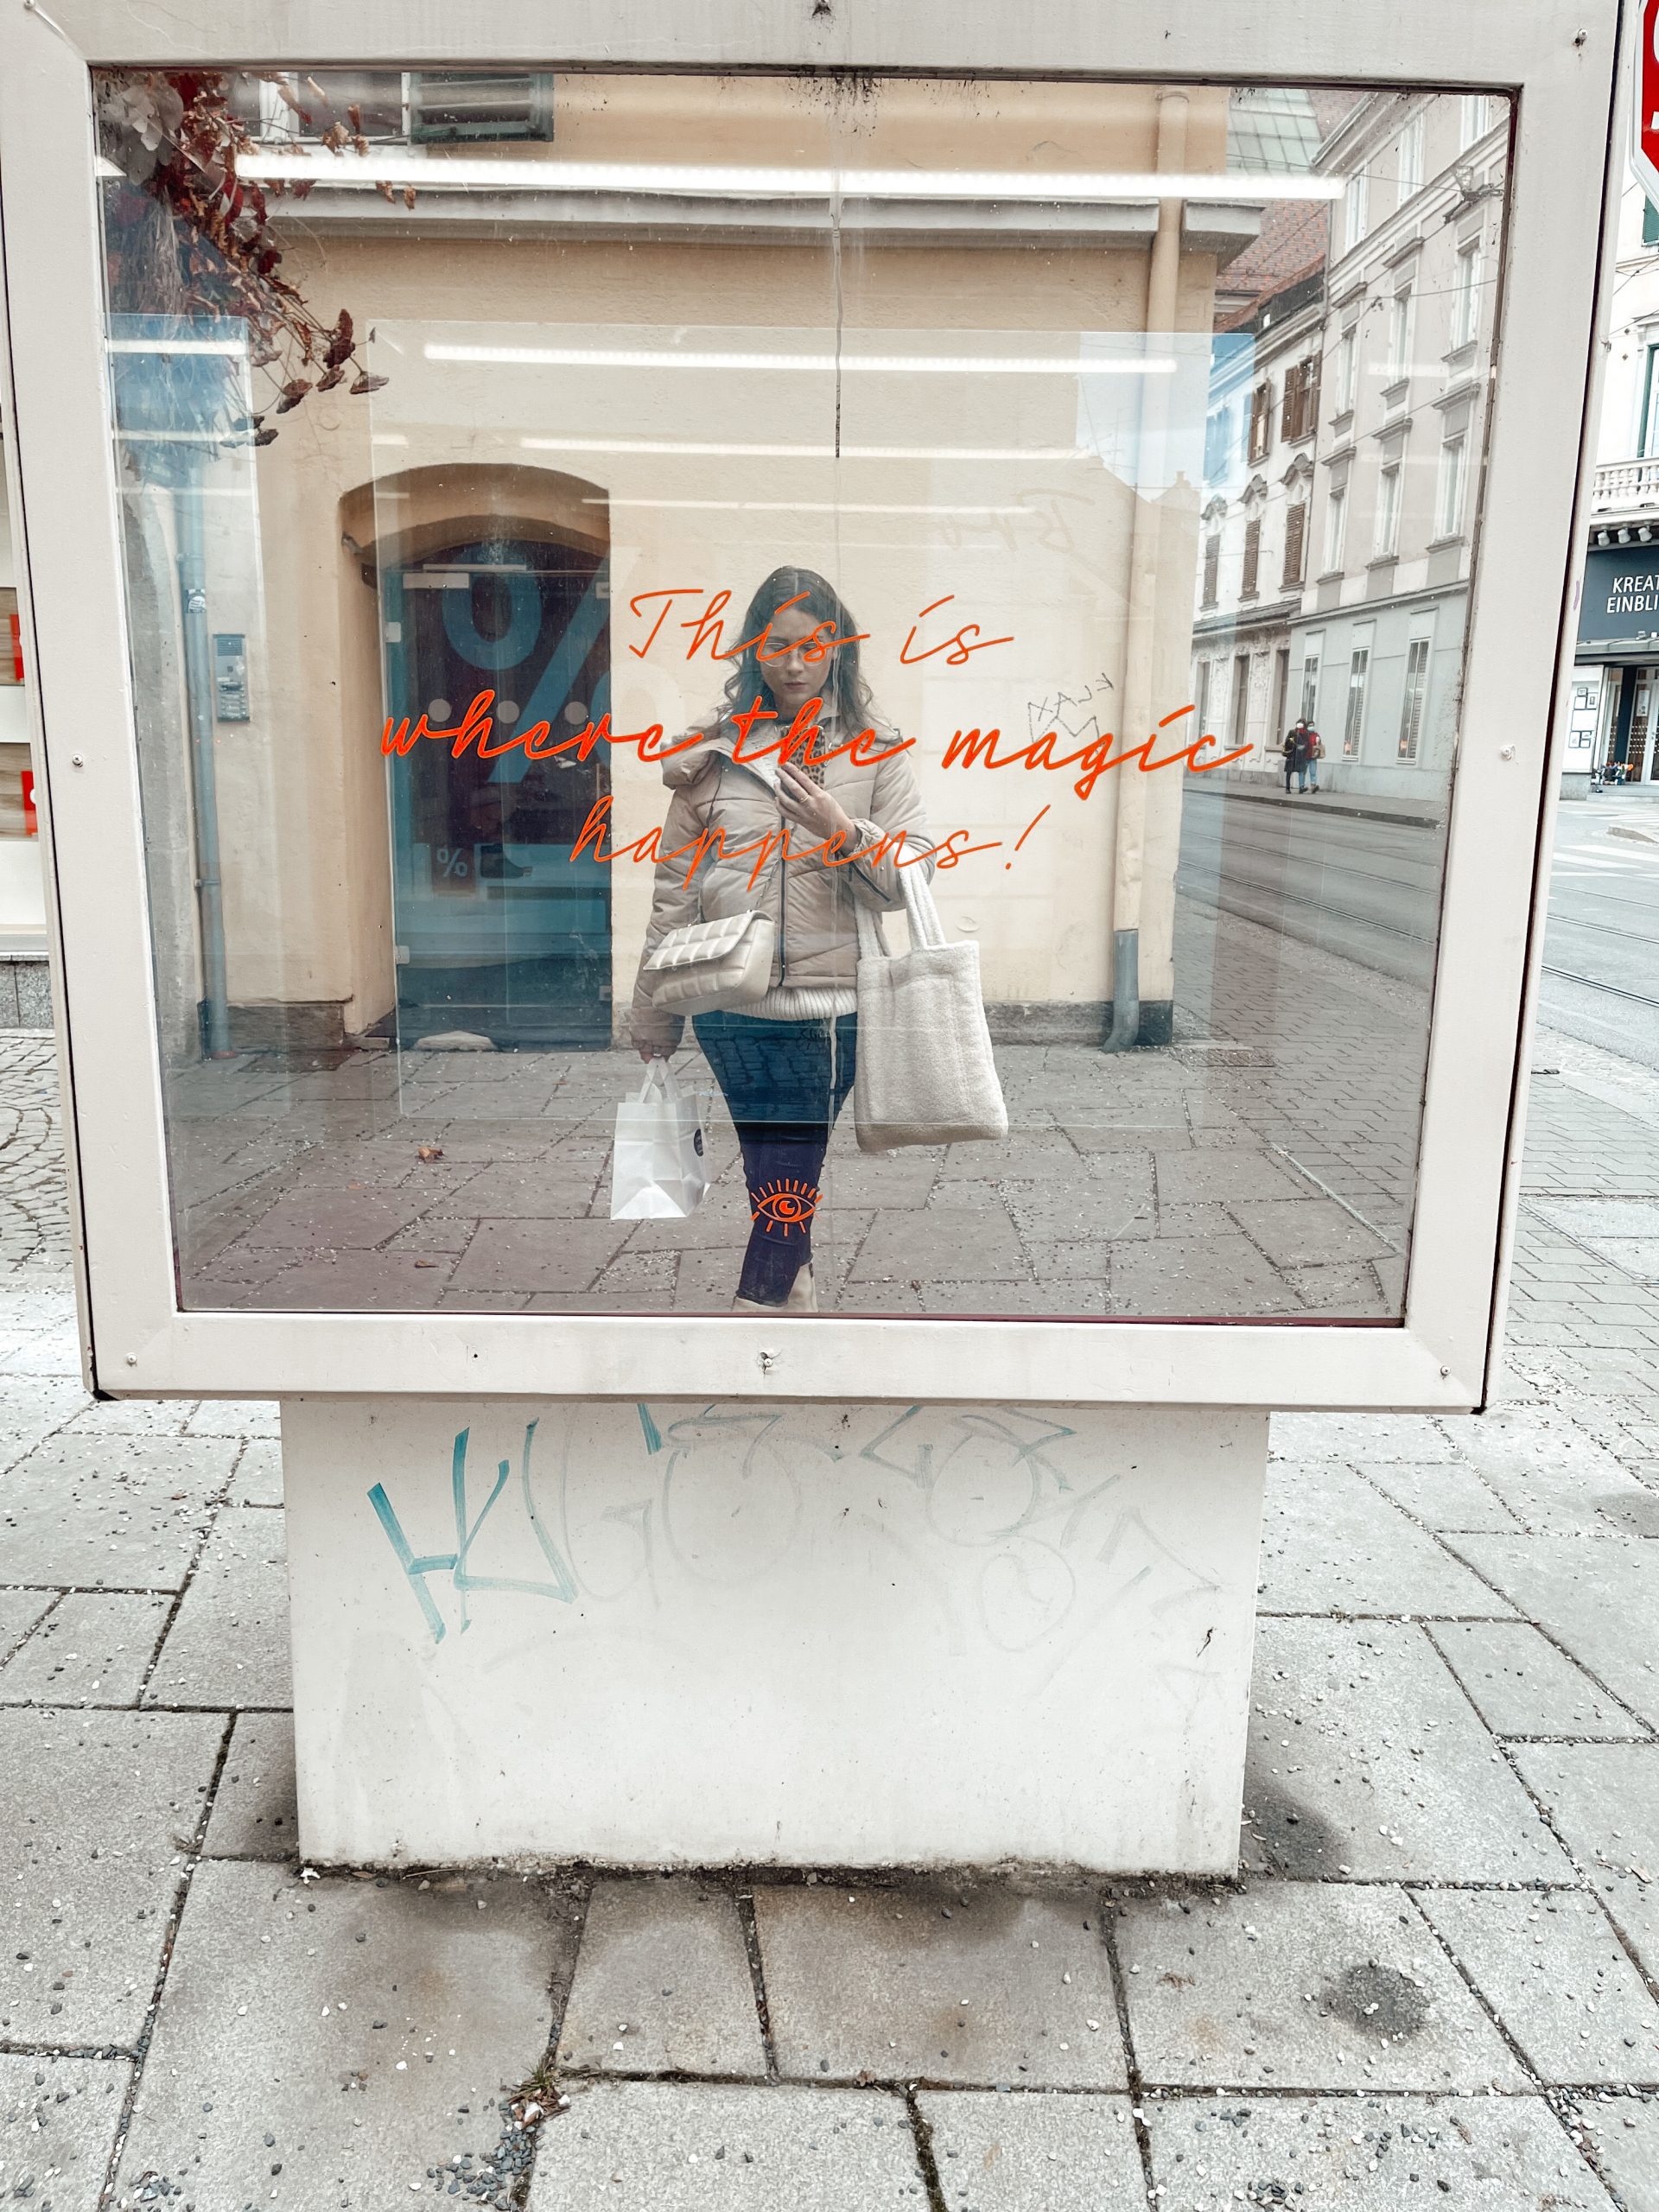 junge Frau macht ein Spiegelfoto in einem Spiegel vor dem Studio "Augenweide" mit der Aufschrift "This is where the magic happens!"